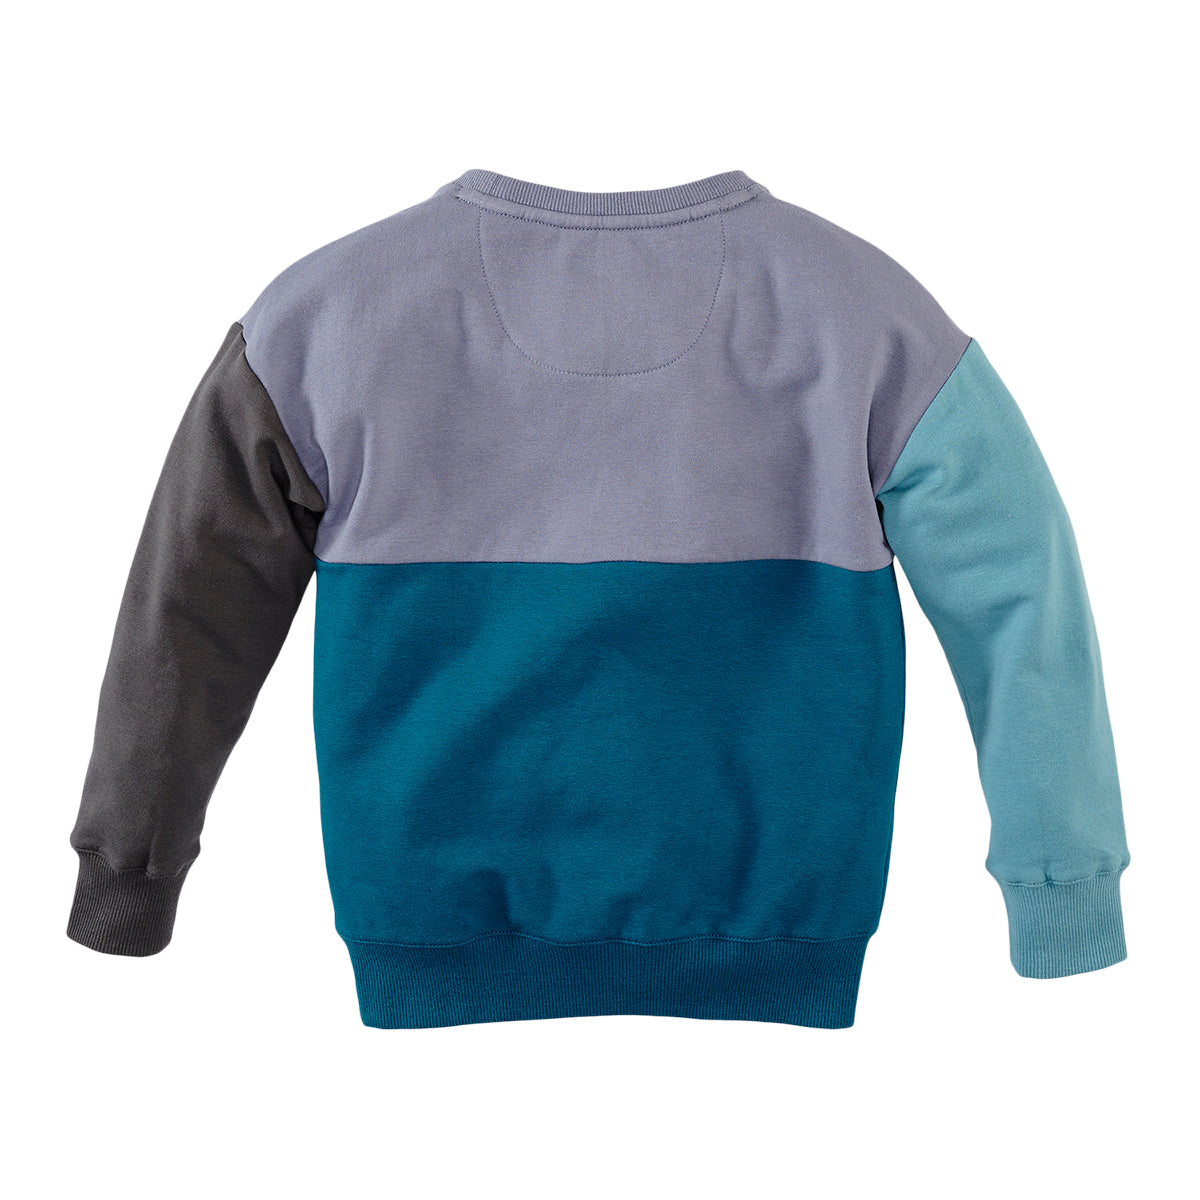 Jongens Sweater Adino van Z8 in de kleur Frosty lavender in maat 140-146.